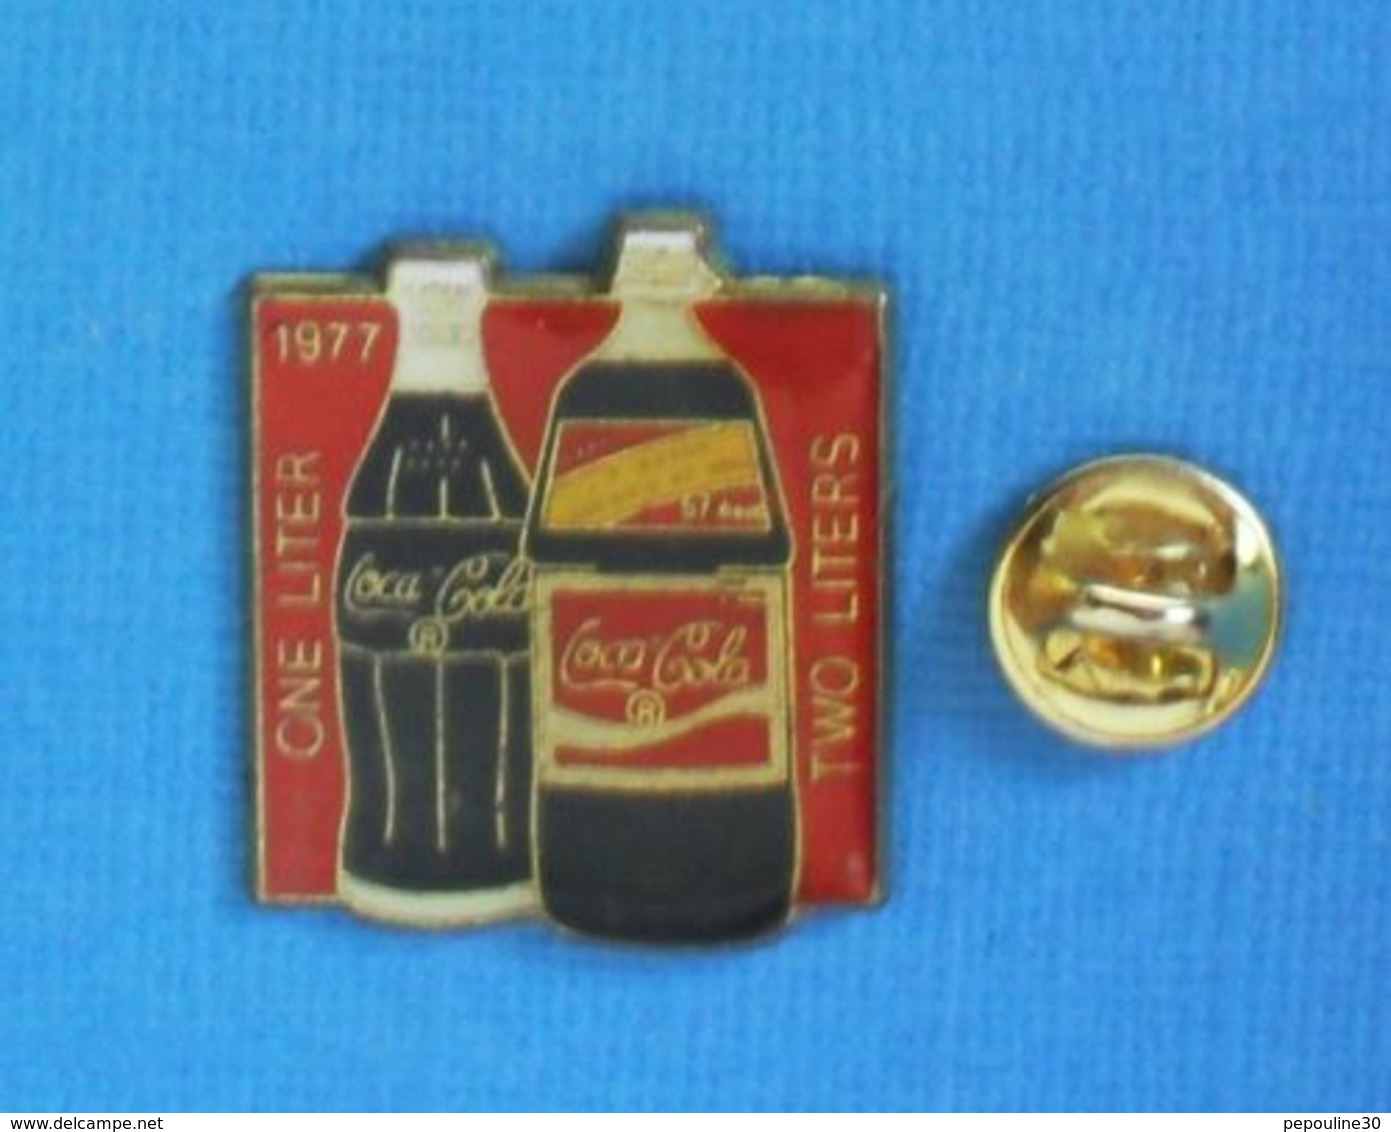 1 PIN'S //  ** COCA COLA / 1977 CNE LITER / TWO LITERS ** - Coca-Cola